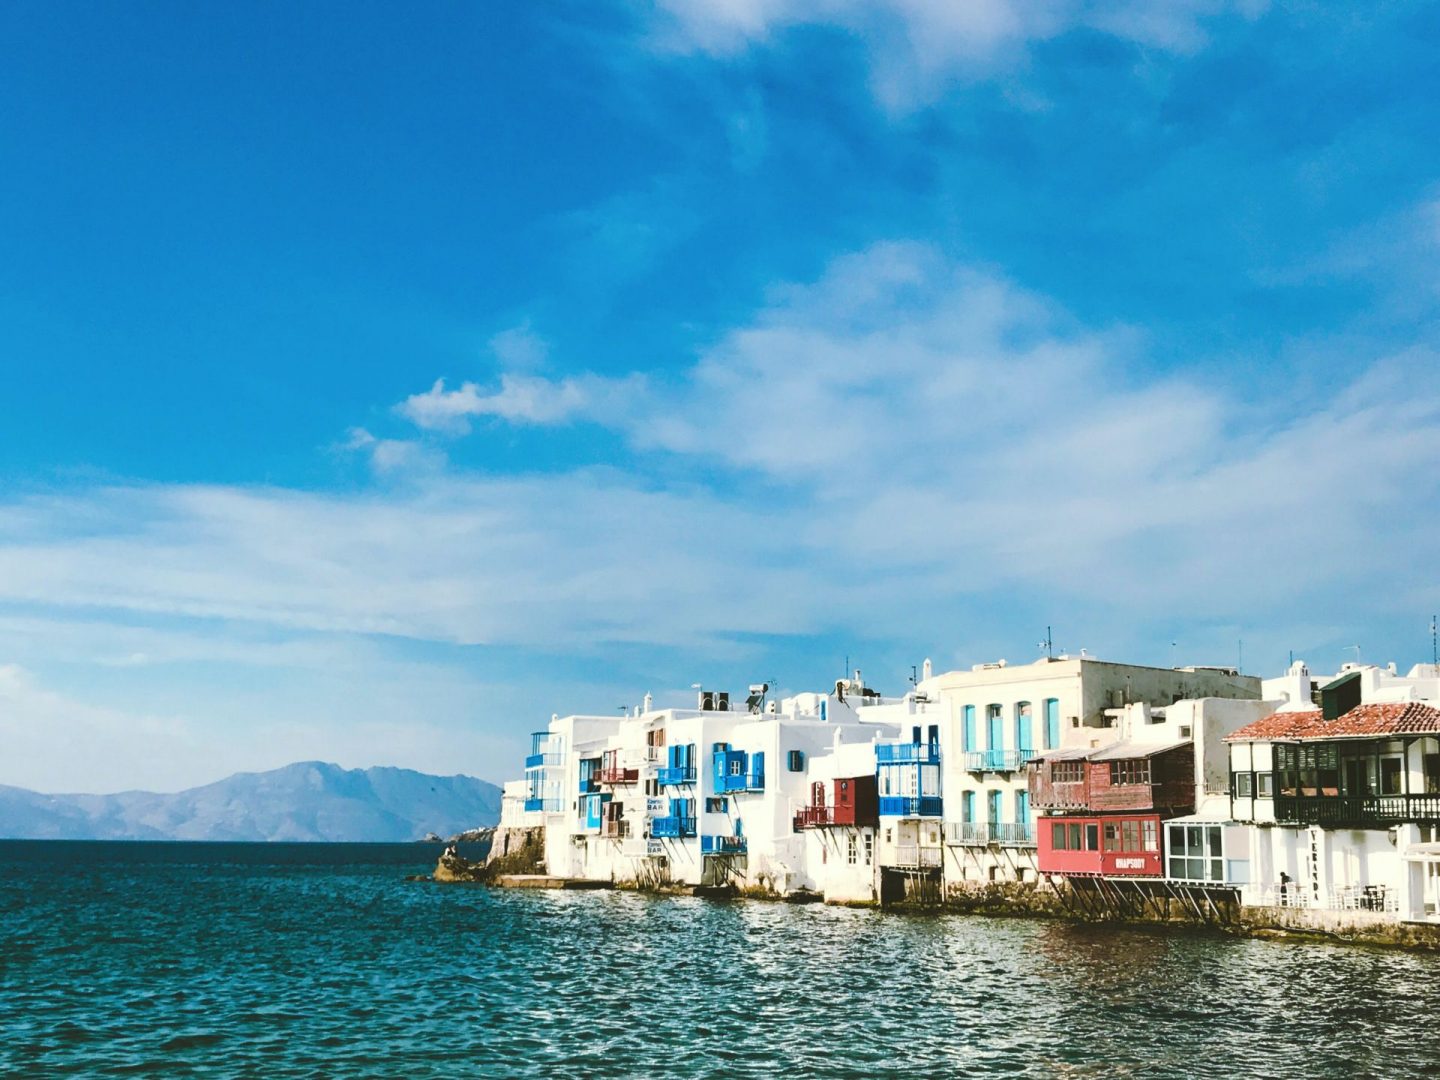 World's best party islands: Mykonos, Greece